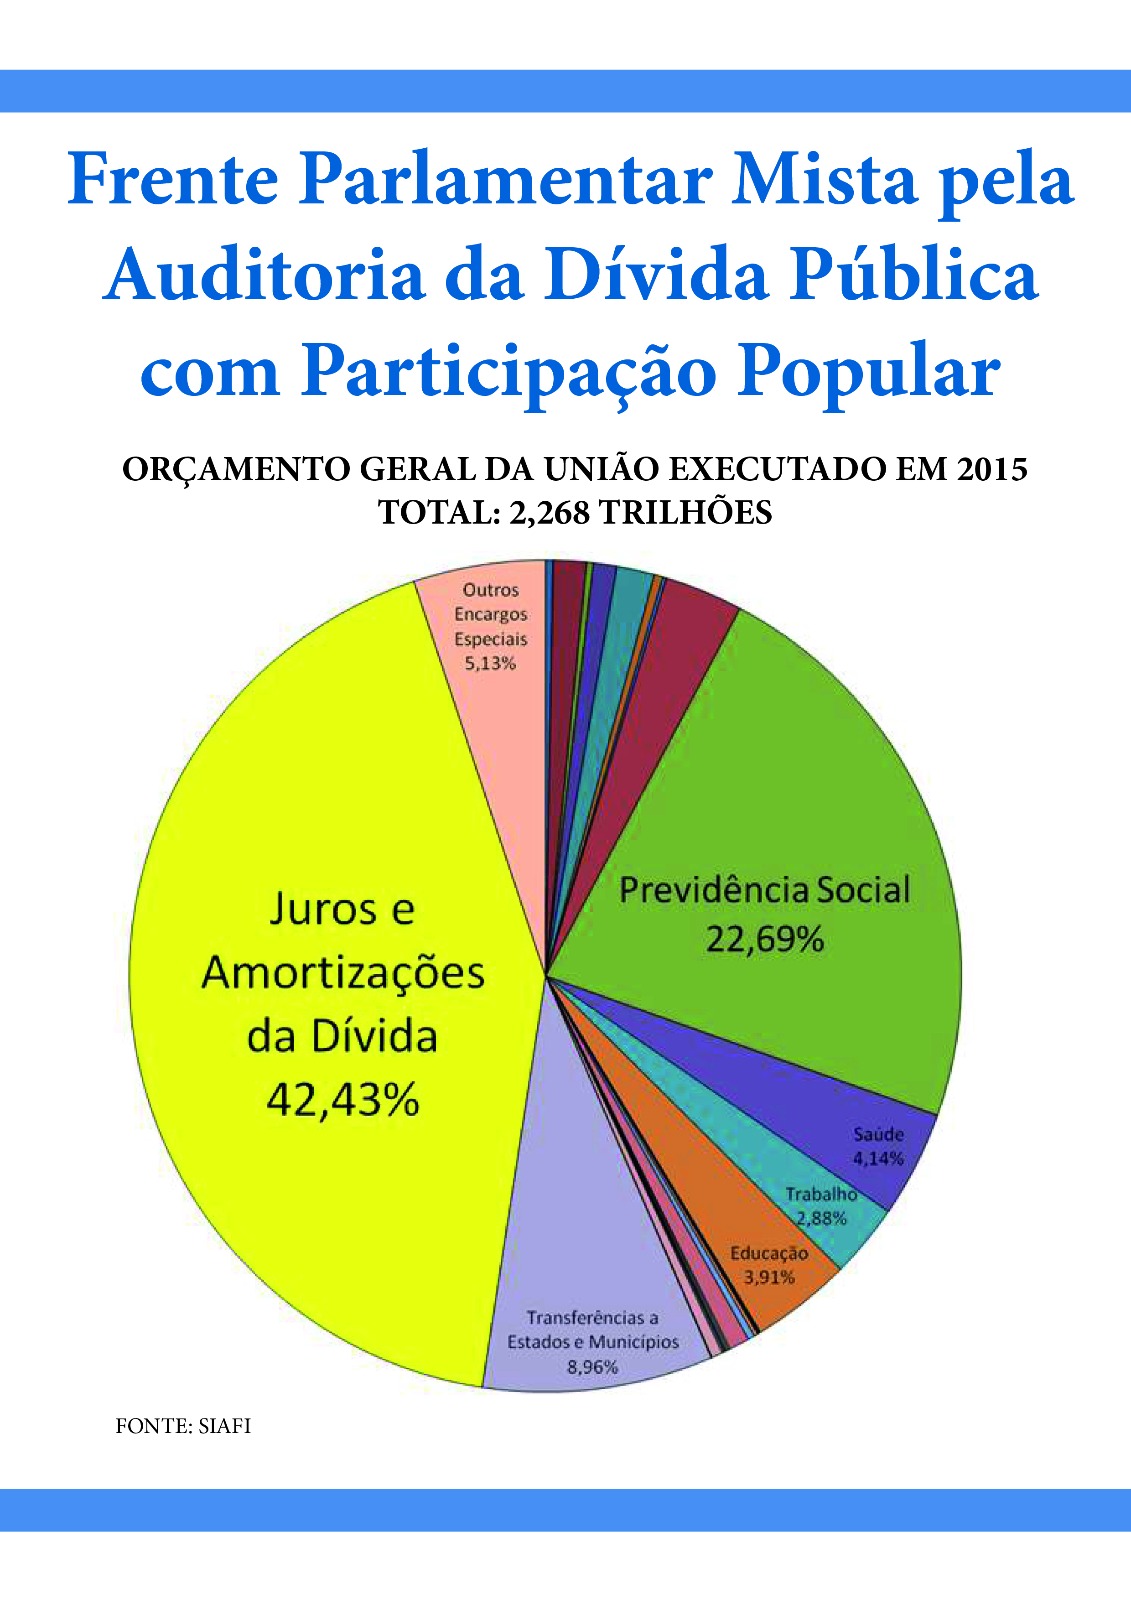 Documentos da Frente Parlamentar Mista pela Auditoria da Dívida Pública com Participação Popular